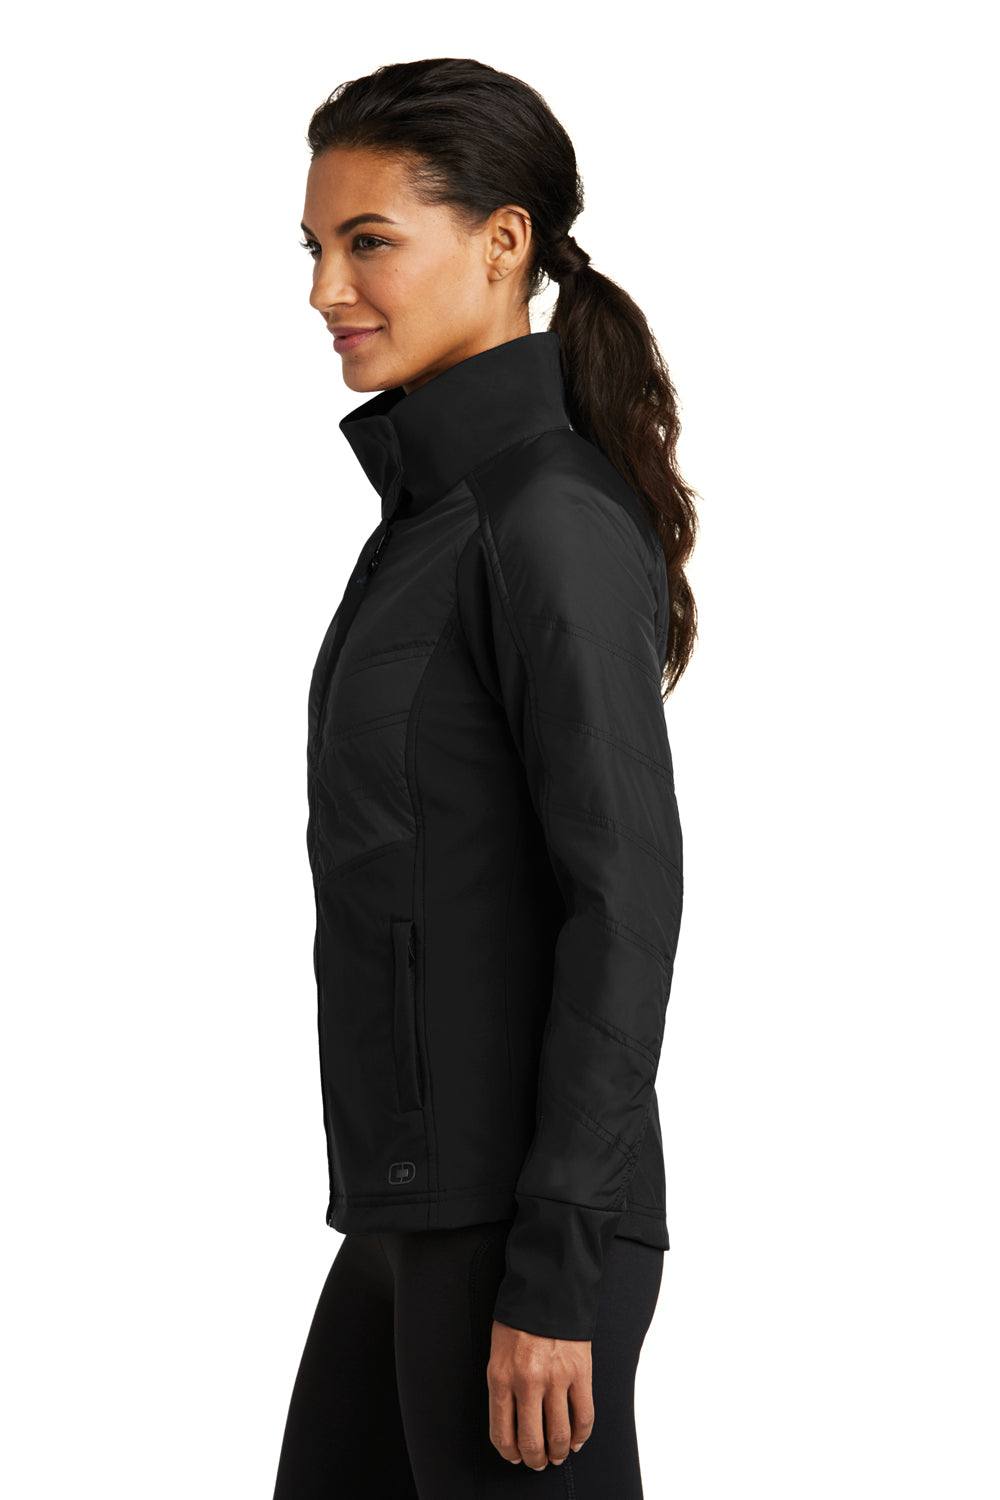 Ogio LOE722 Womens Endurance Brink Wind & Water Resistant Full Zip Jacket Black Side